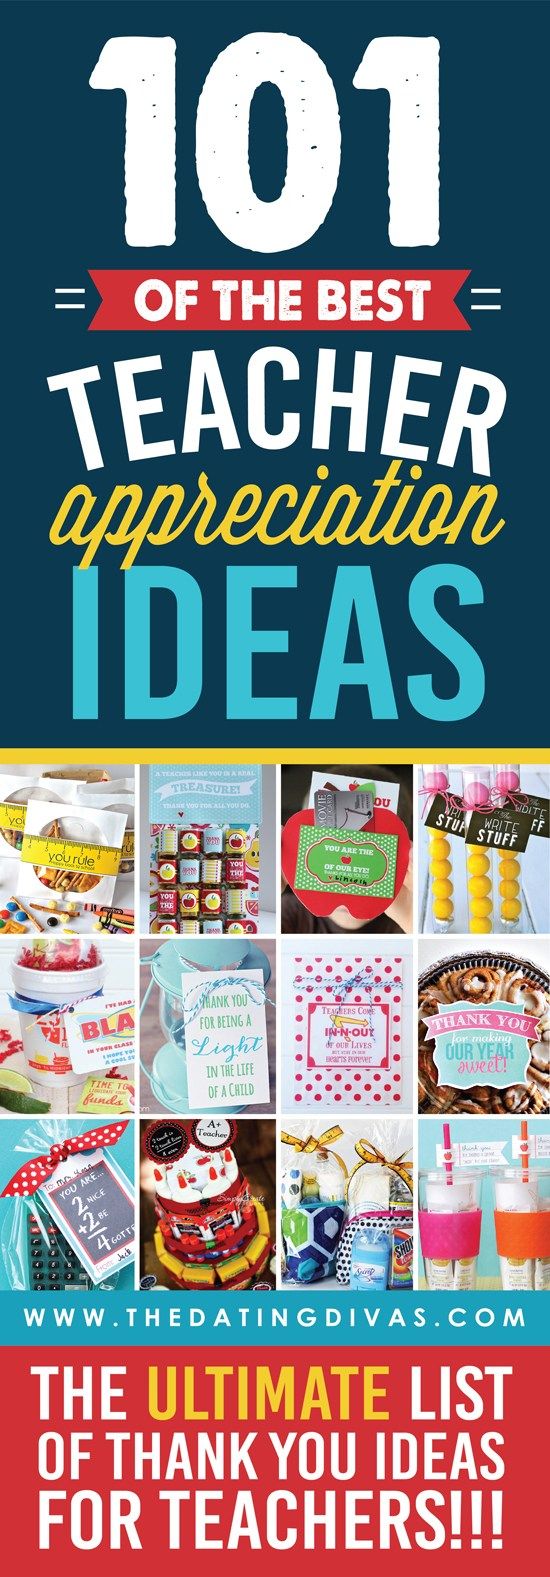 Teacher Appreciation Week - 101 Teacher Appreciation Ideas